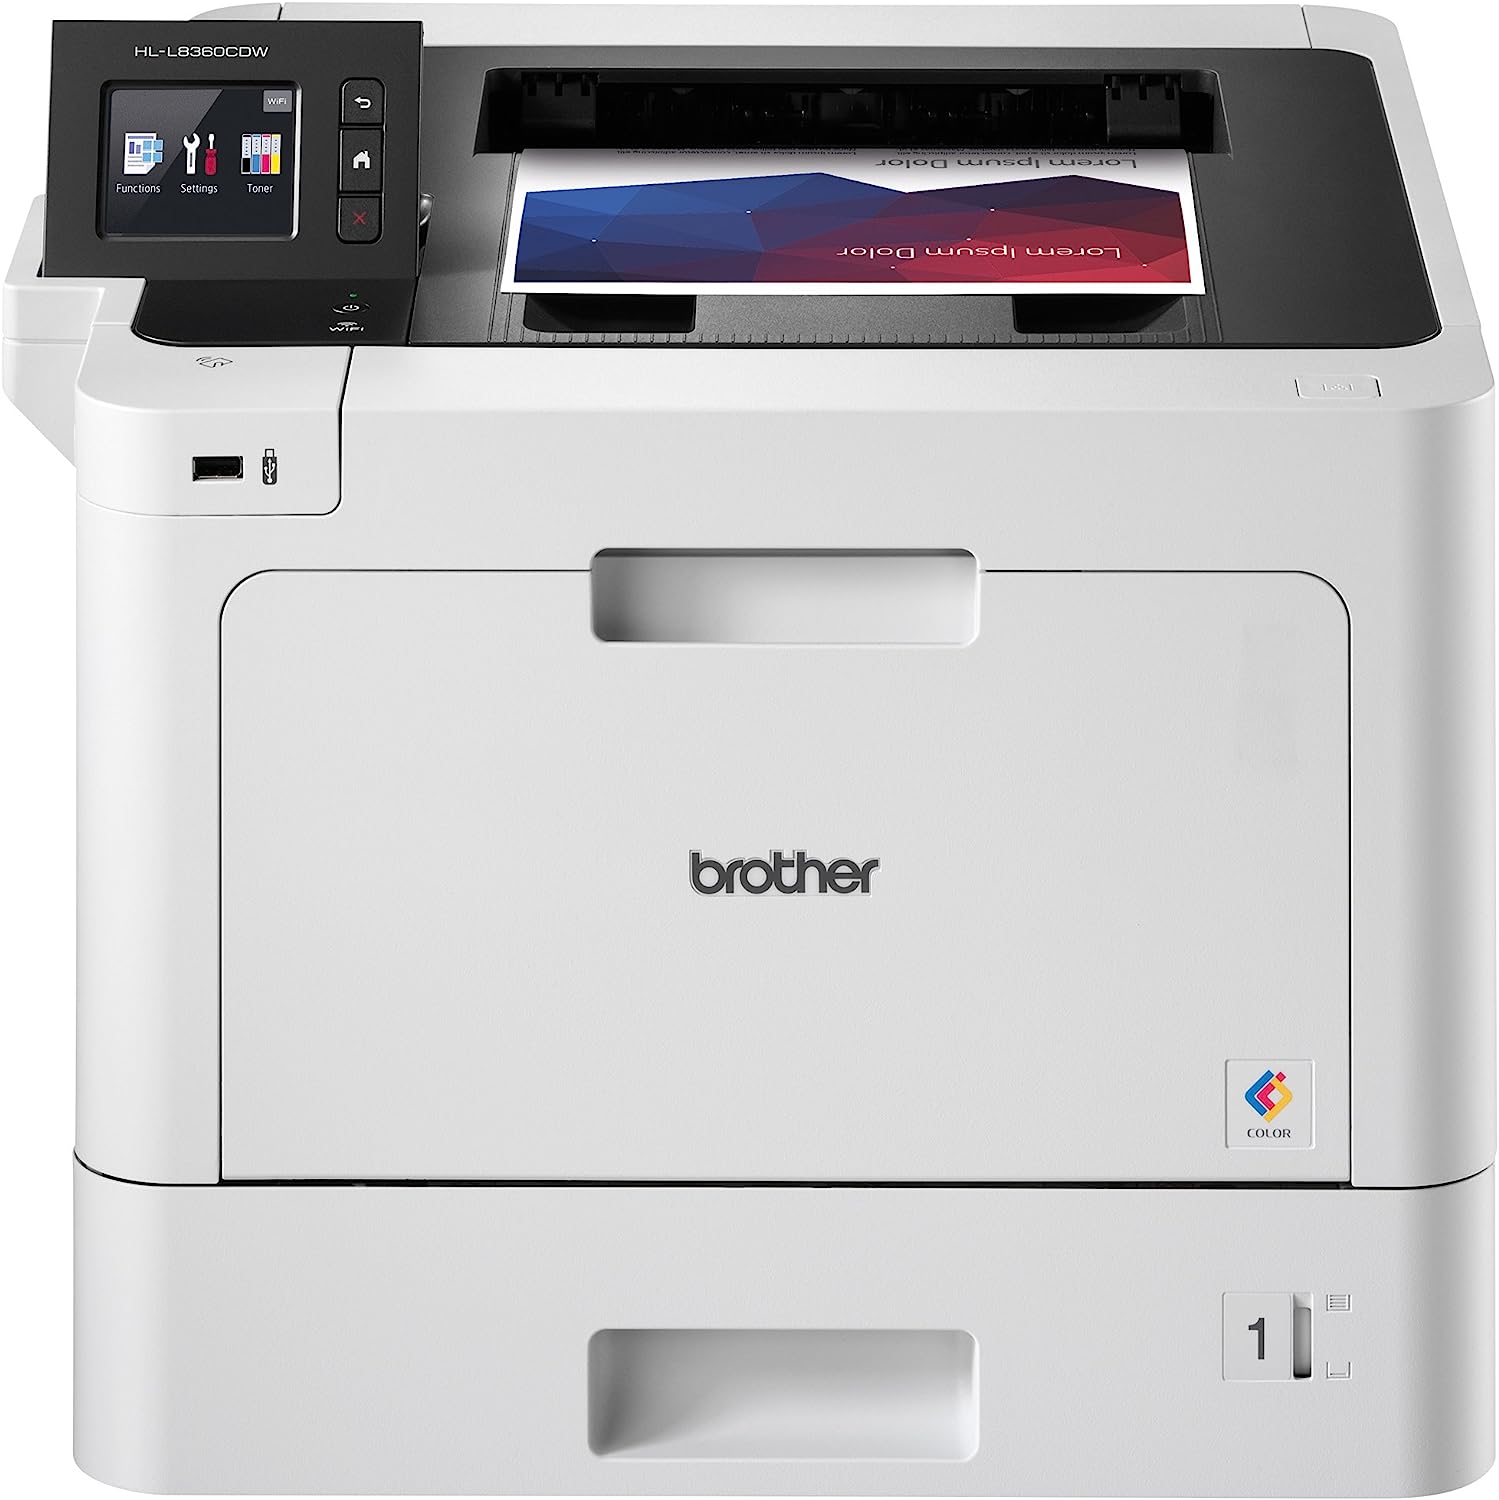 Brother Business Color Laser Printer, HL-L8360CDW, [...]